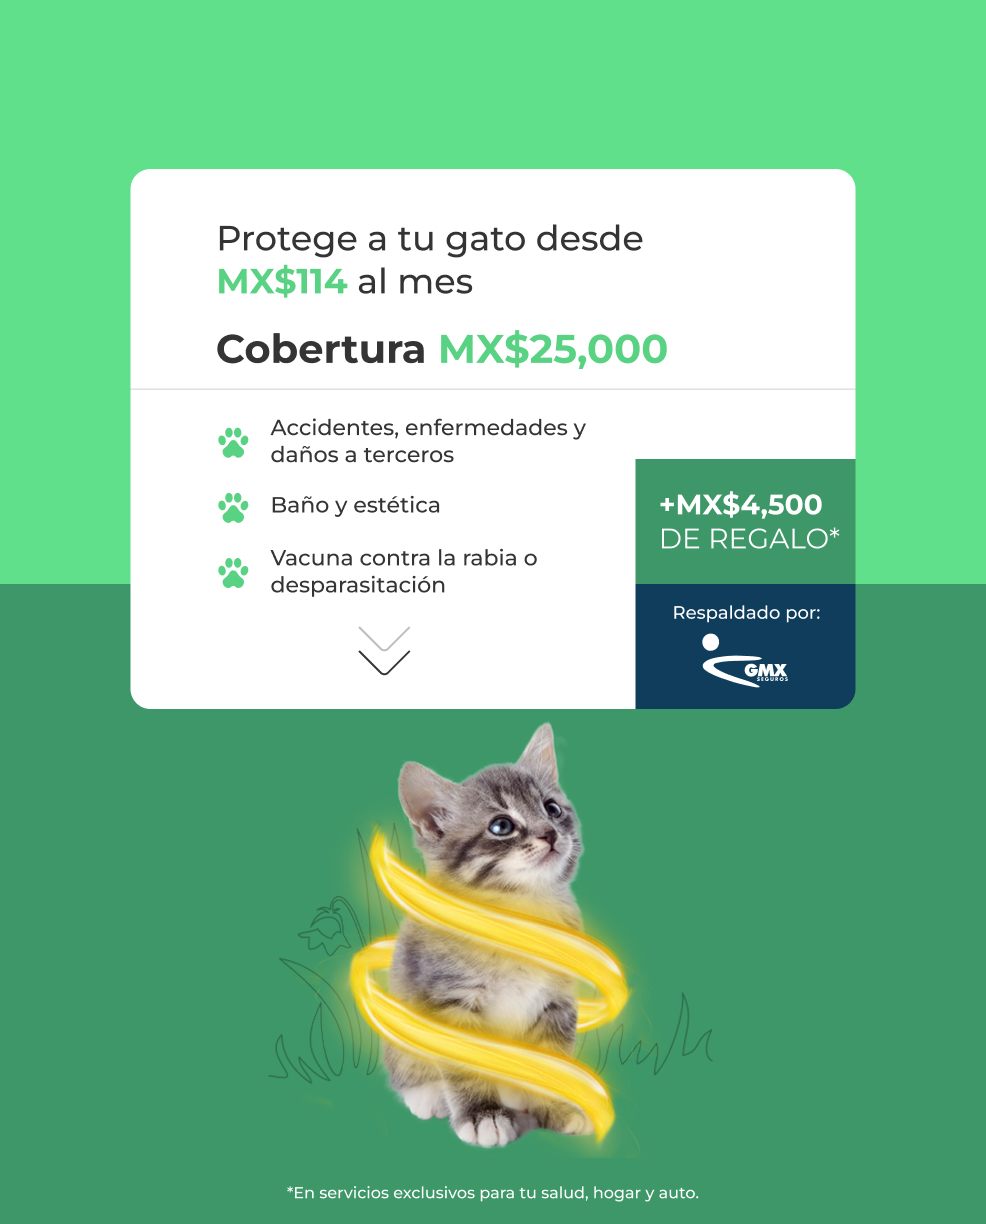 Protege a tu gato desde MX$114 al mes